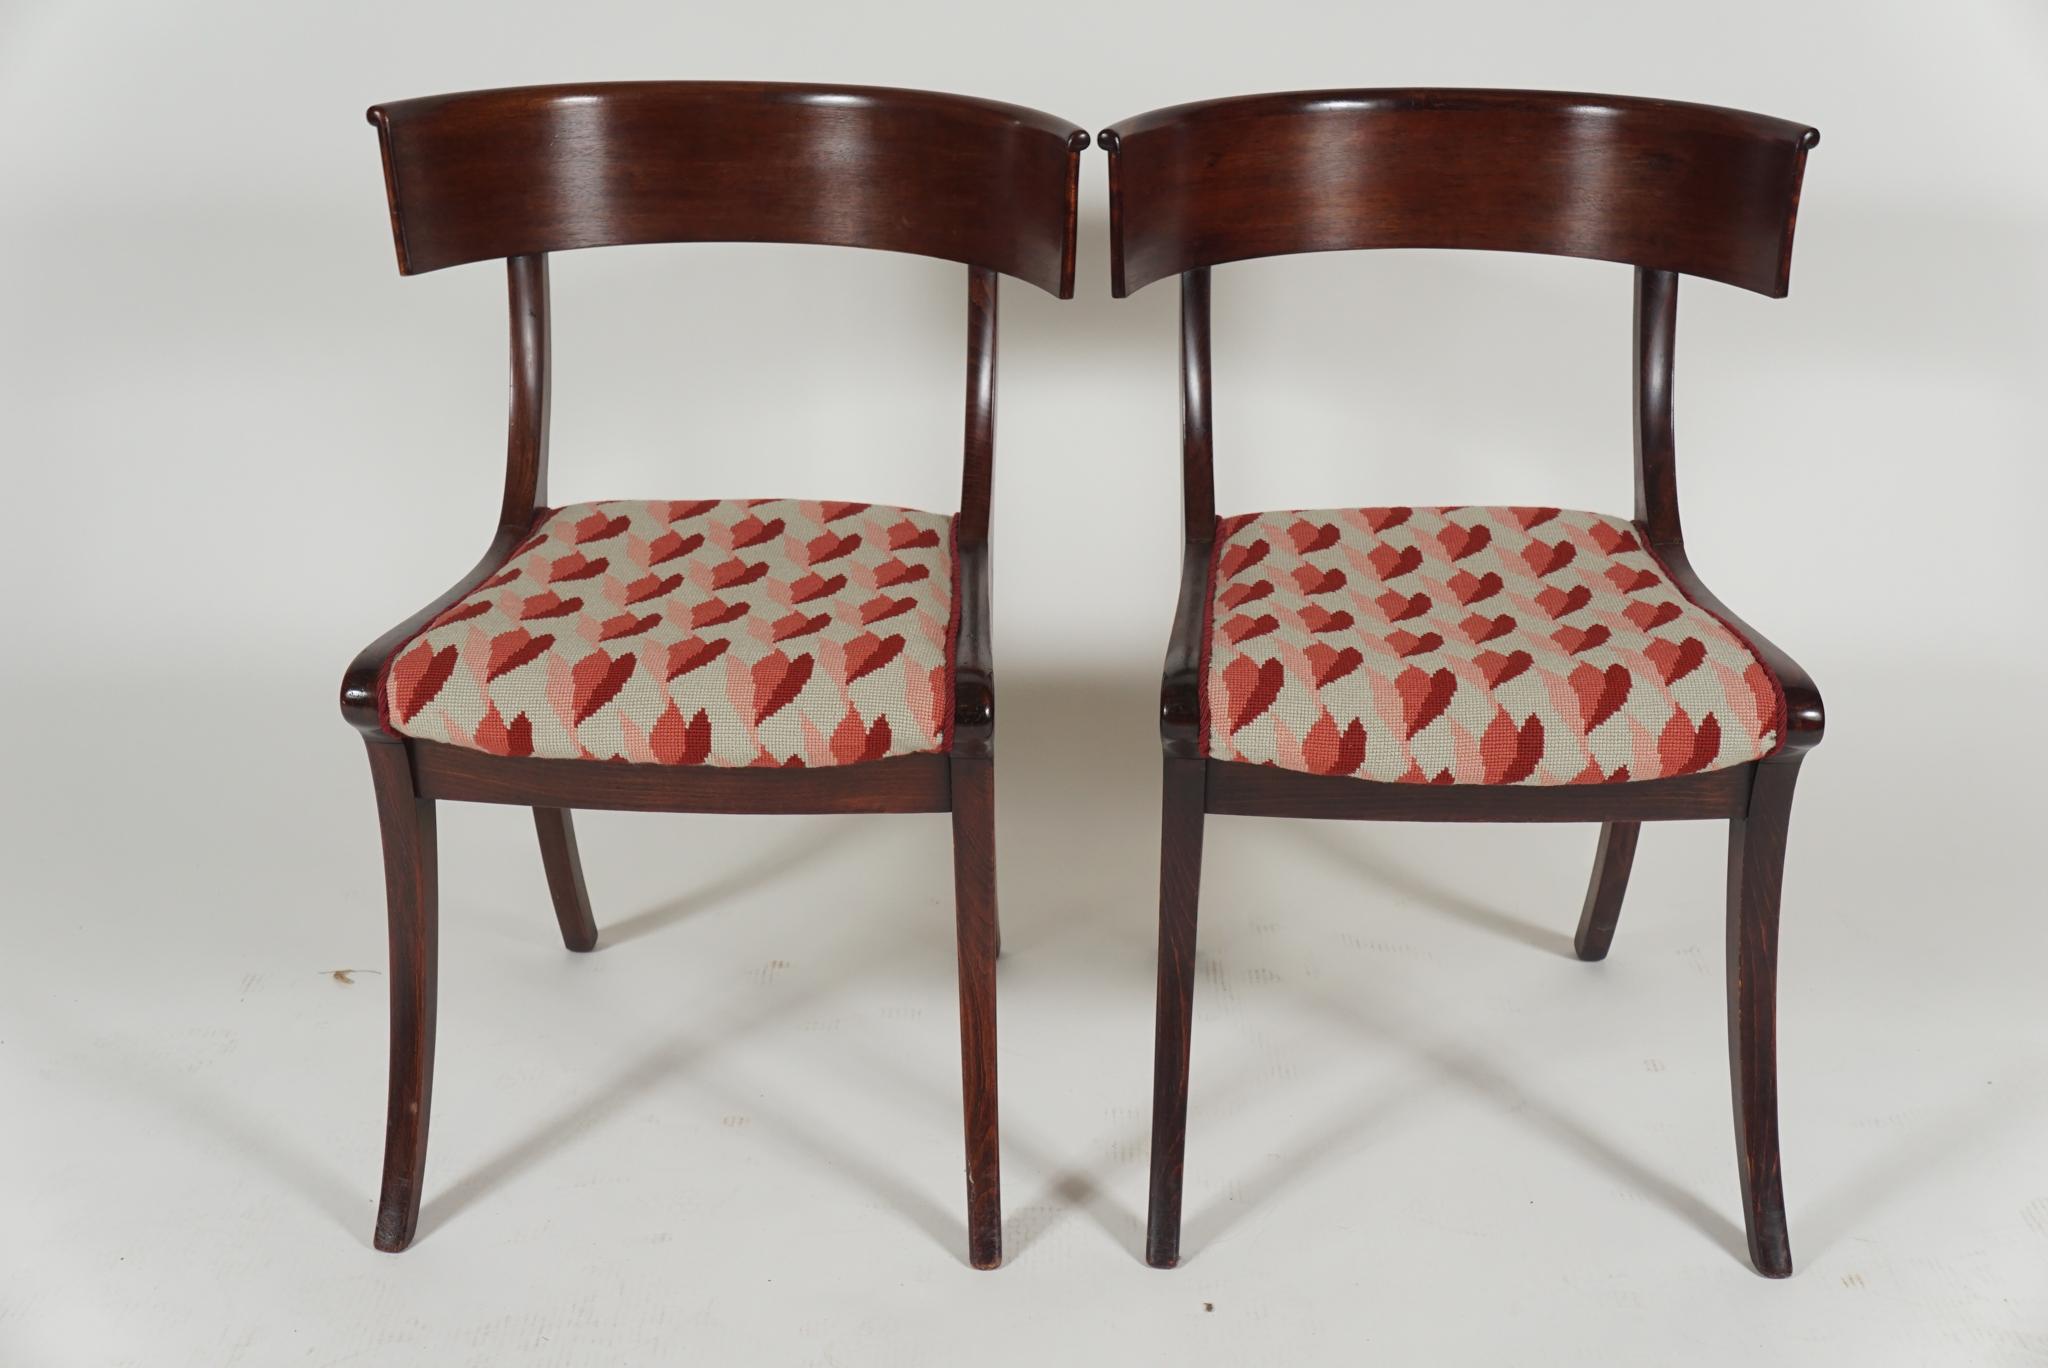 Regency Revival Pair of Klismos Chairs